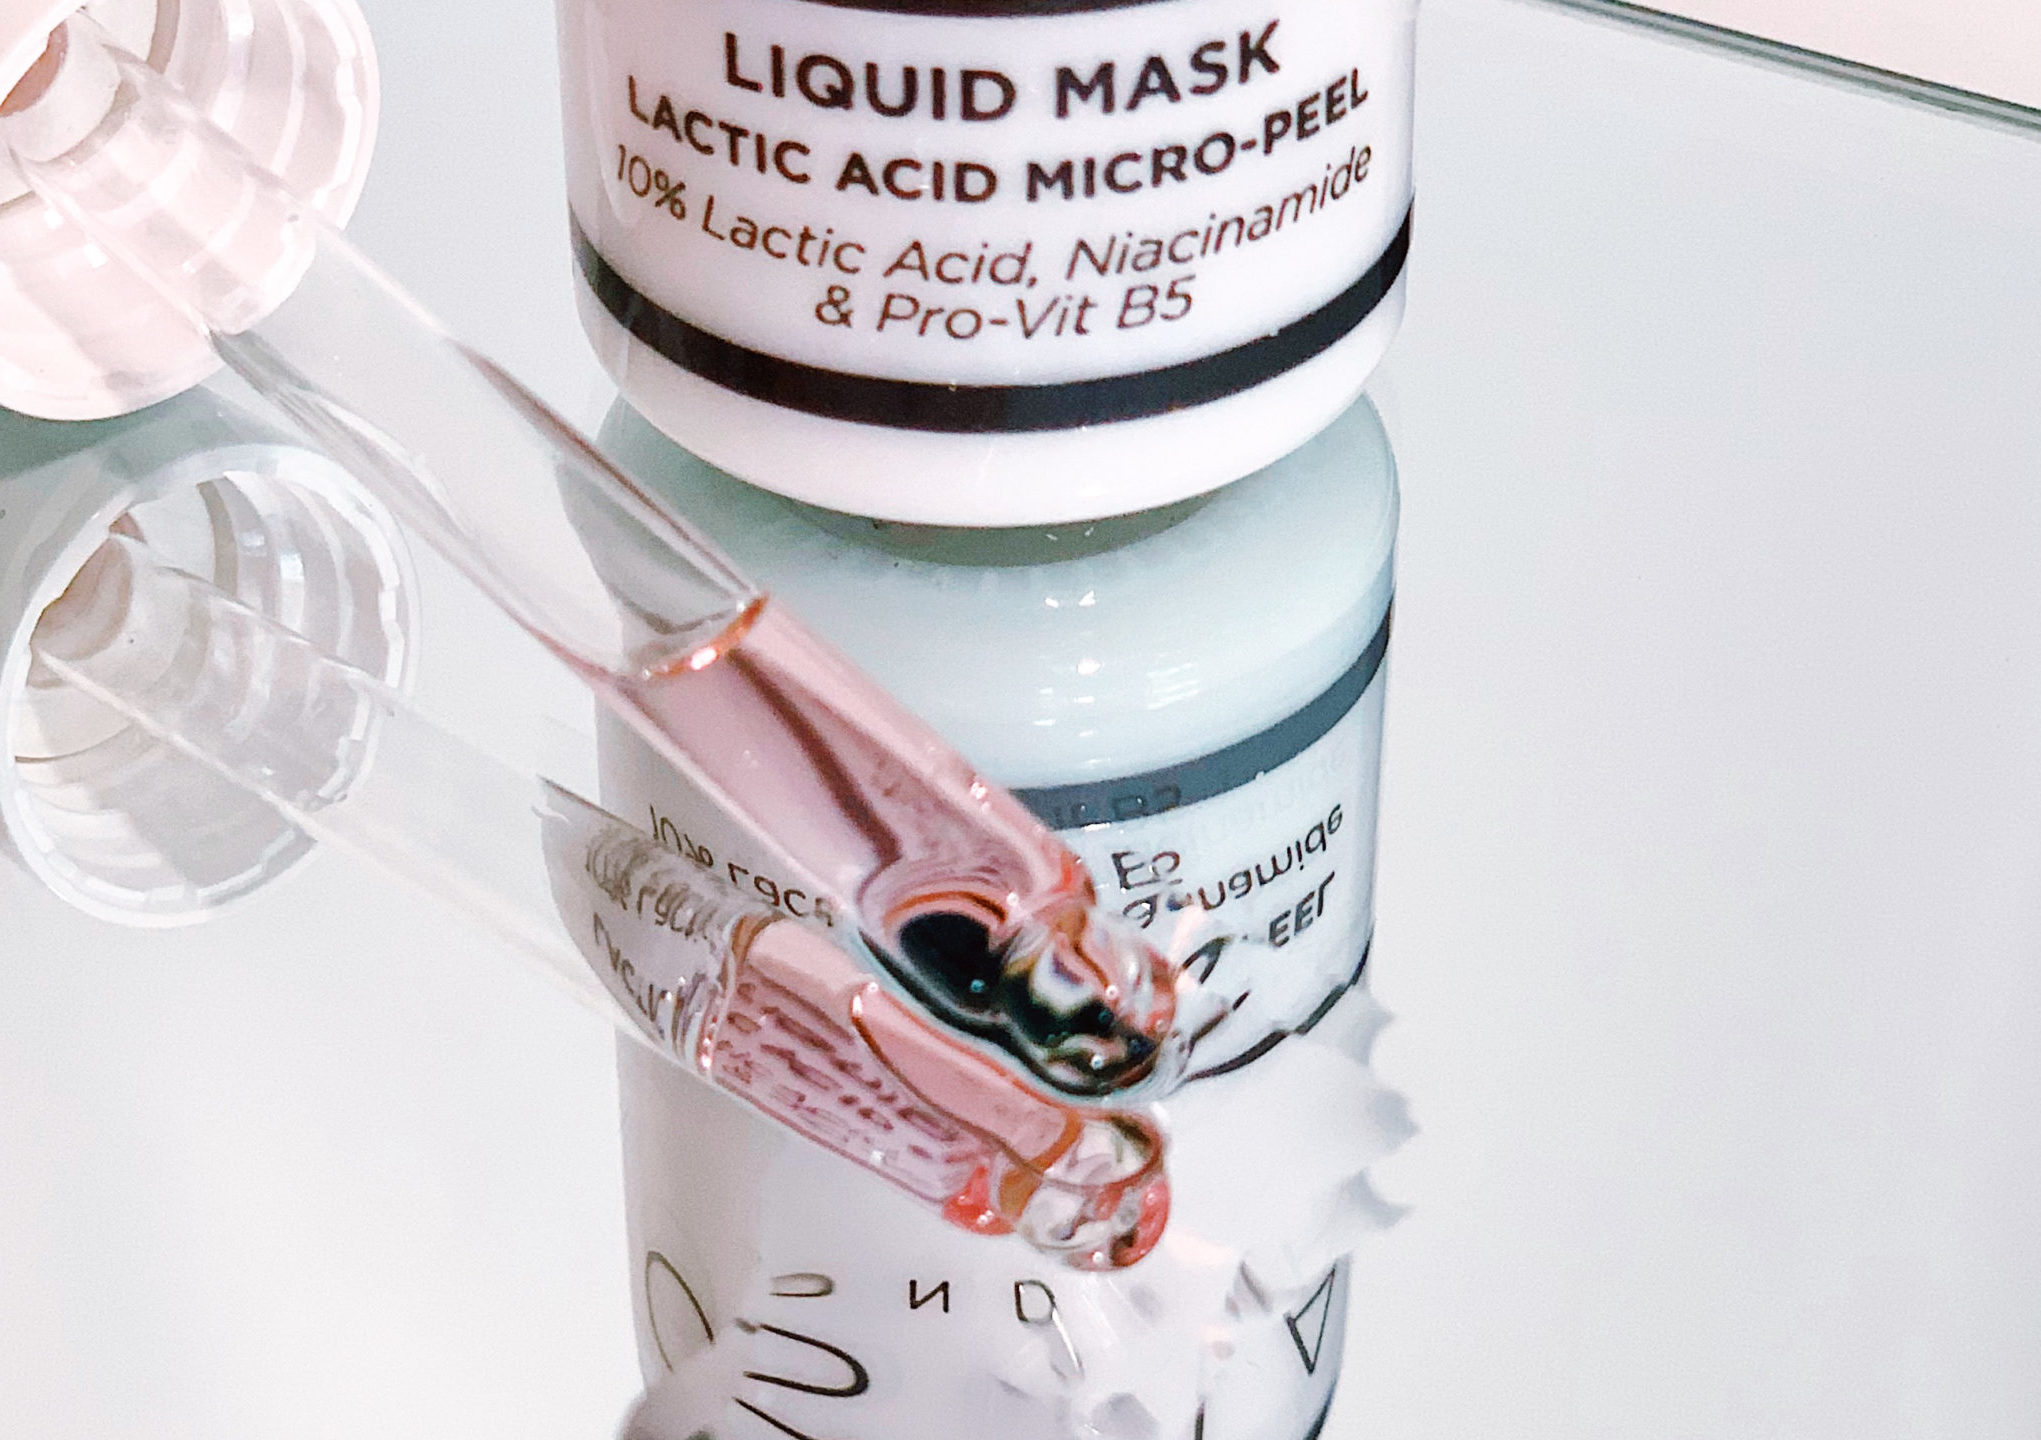 Oskia Liquid Mask